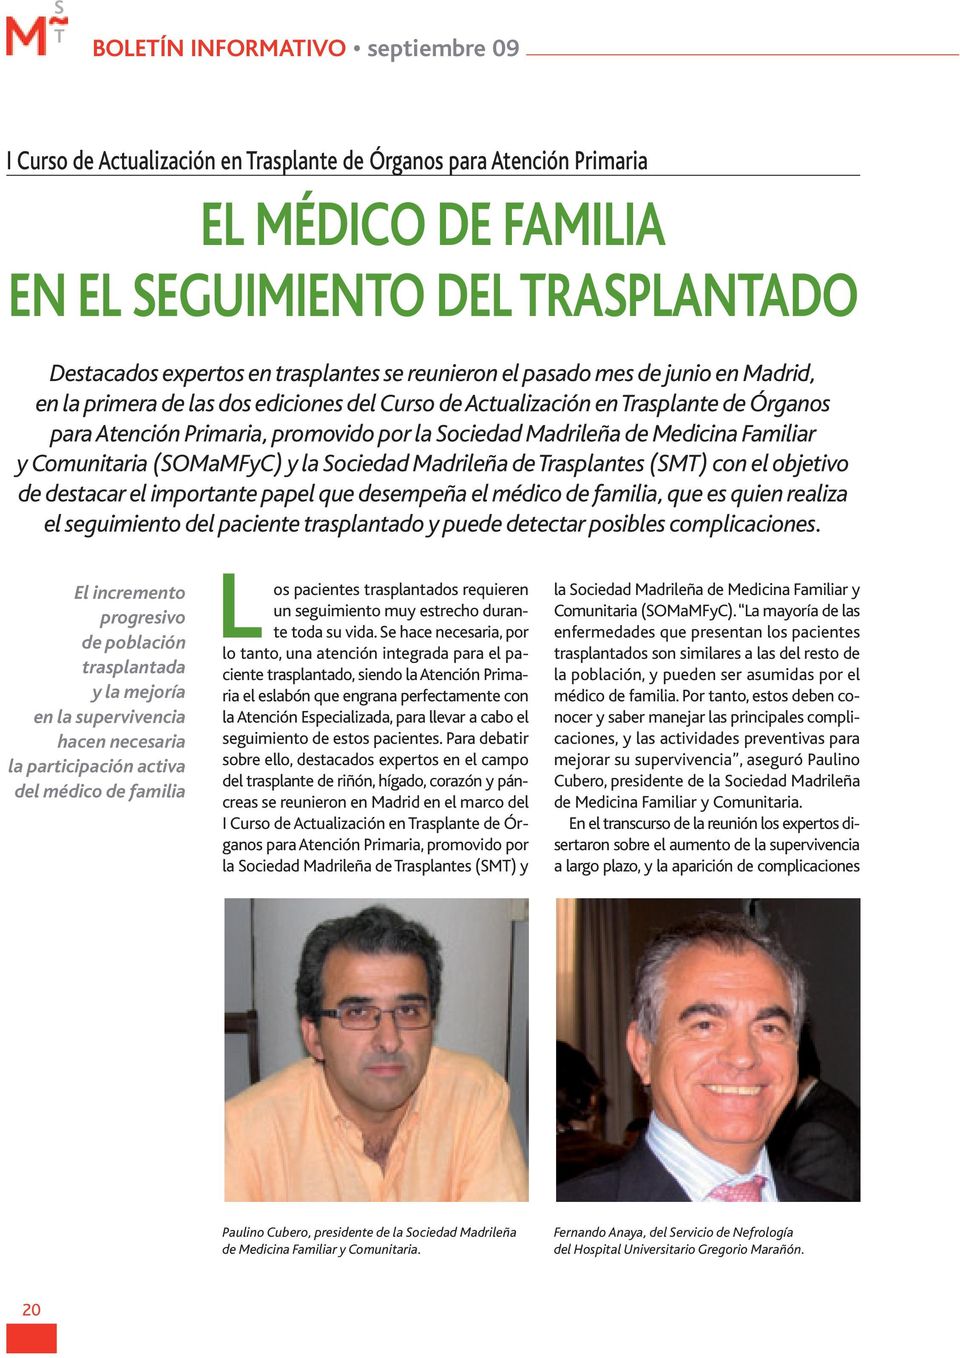 Medicina Familiar y Comunitaria (SOMaMFyC) y la Sociedad Madrileña de rasplantes (SM) con el objetivo de destacar el importante papel que desempeña el médico de familia, que es quien realiza el